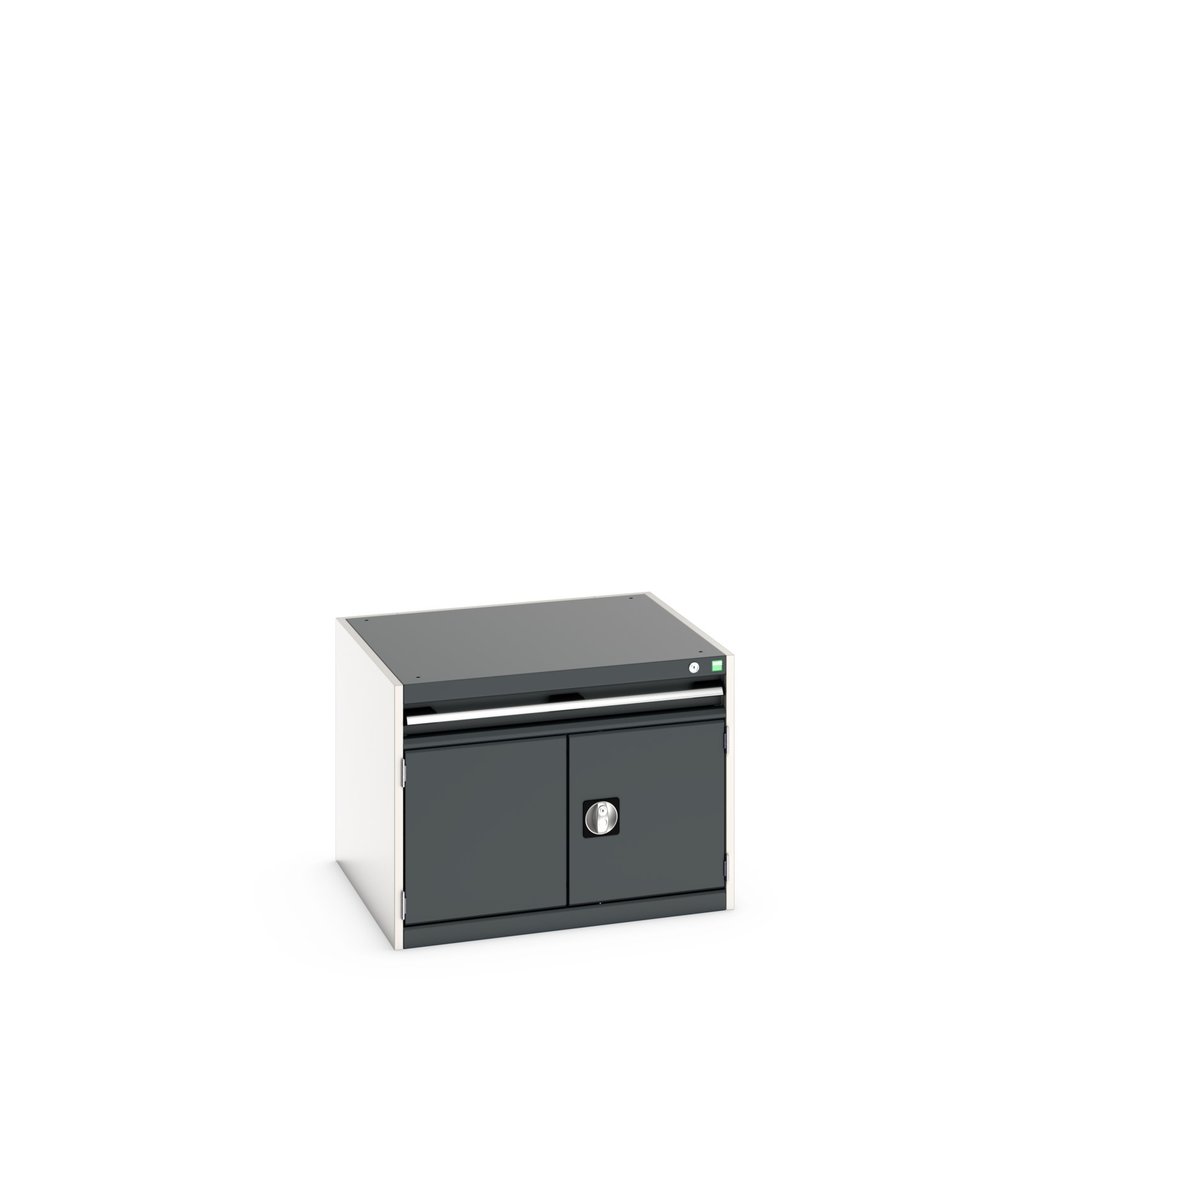 40028089. - cubio drawer-door cabinet